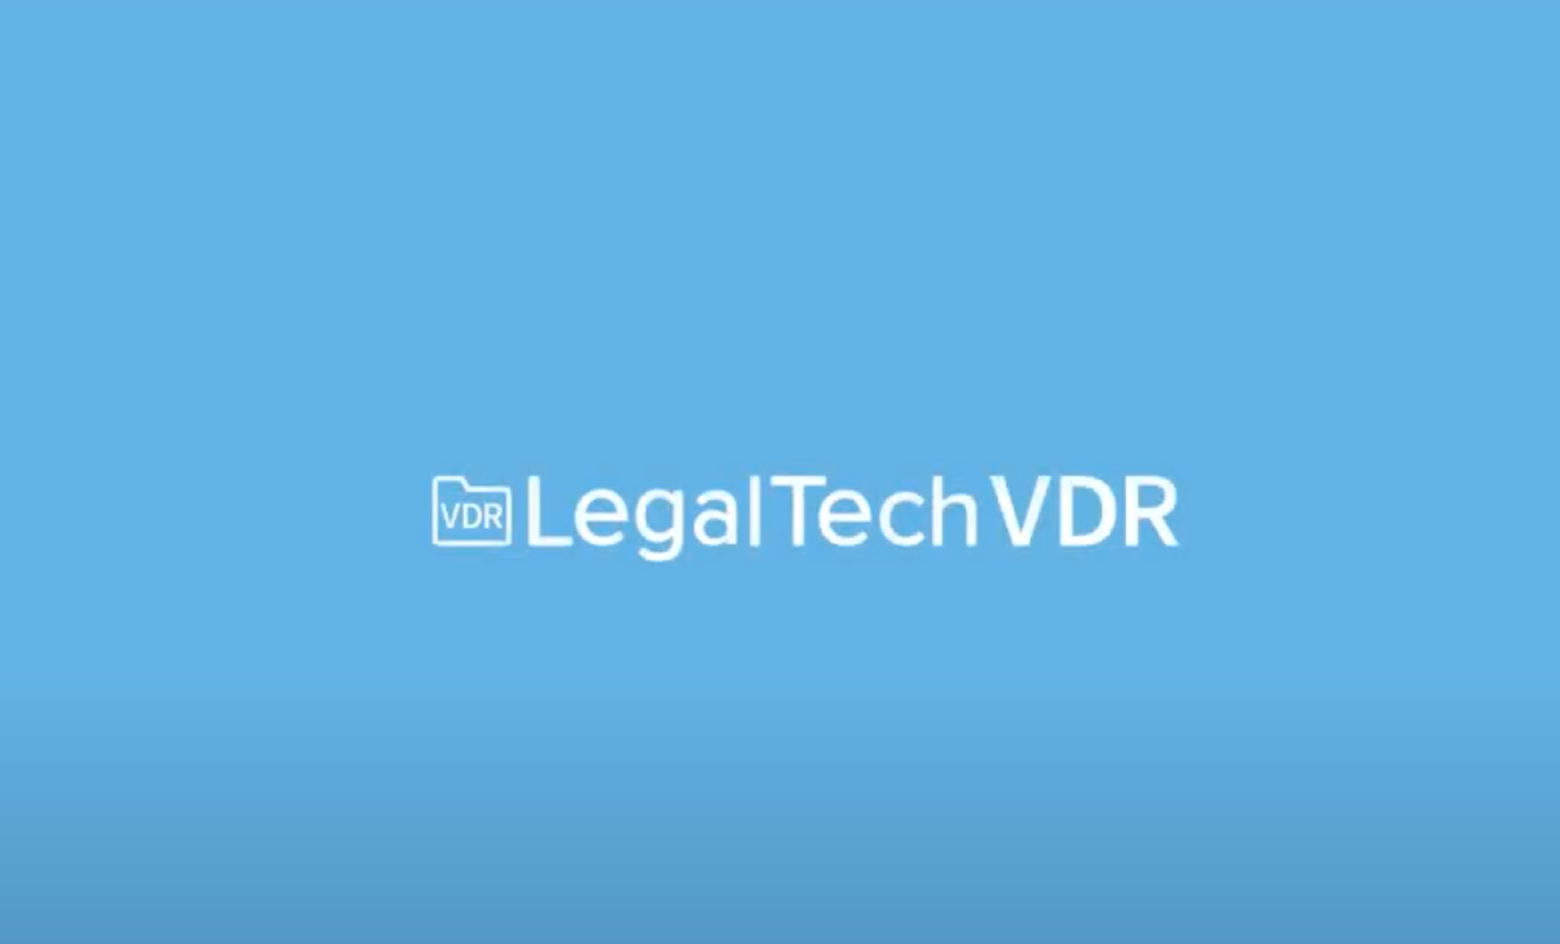 LegalTech VDR